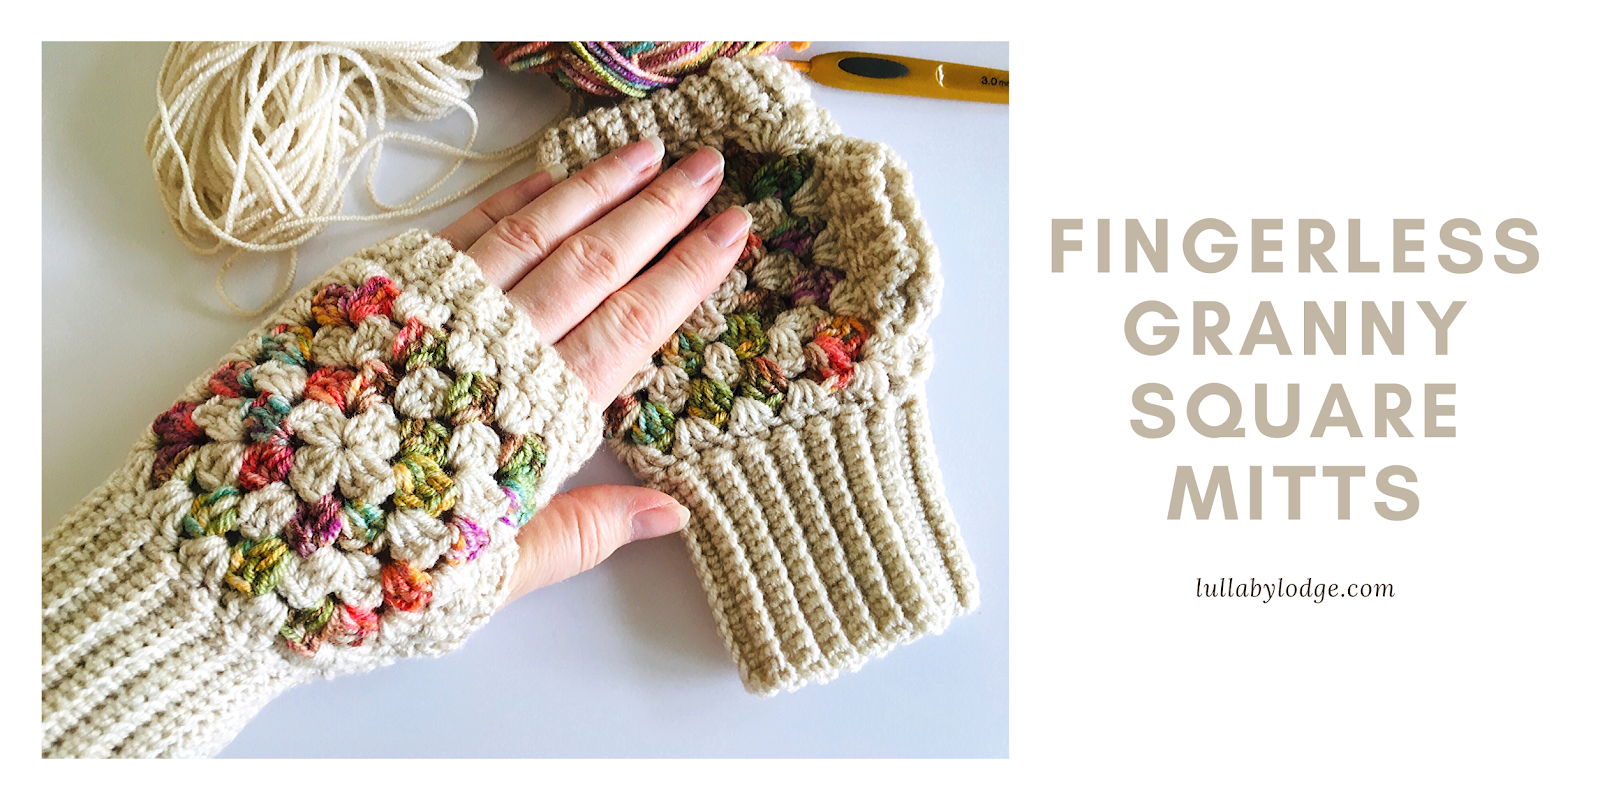 Leaf Crochet Fingerless Gloves Pattern